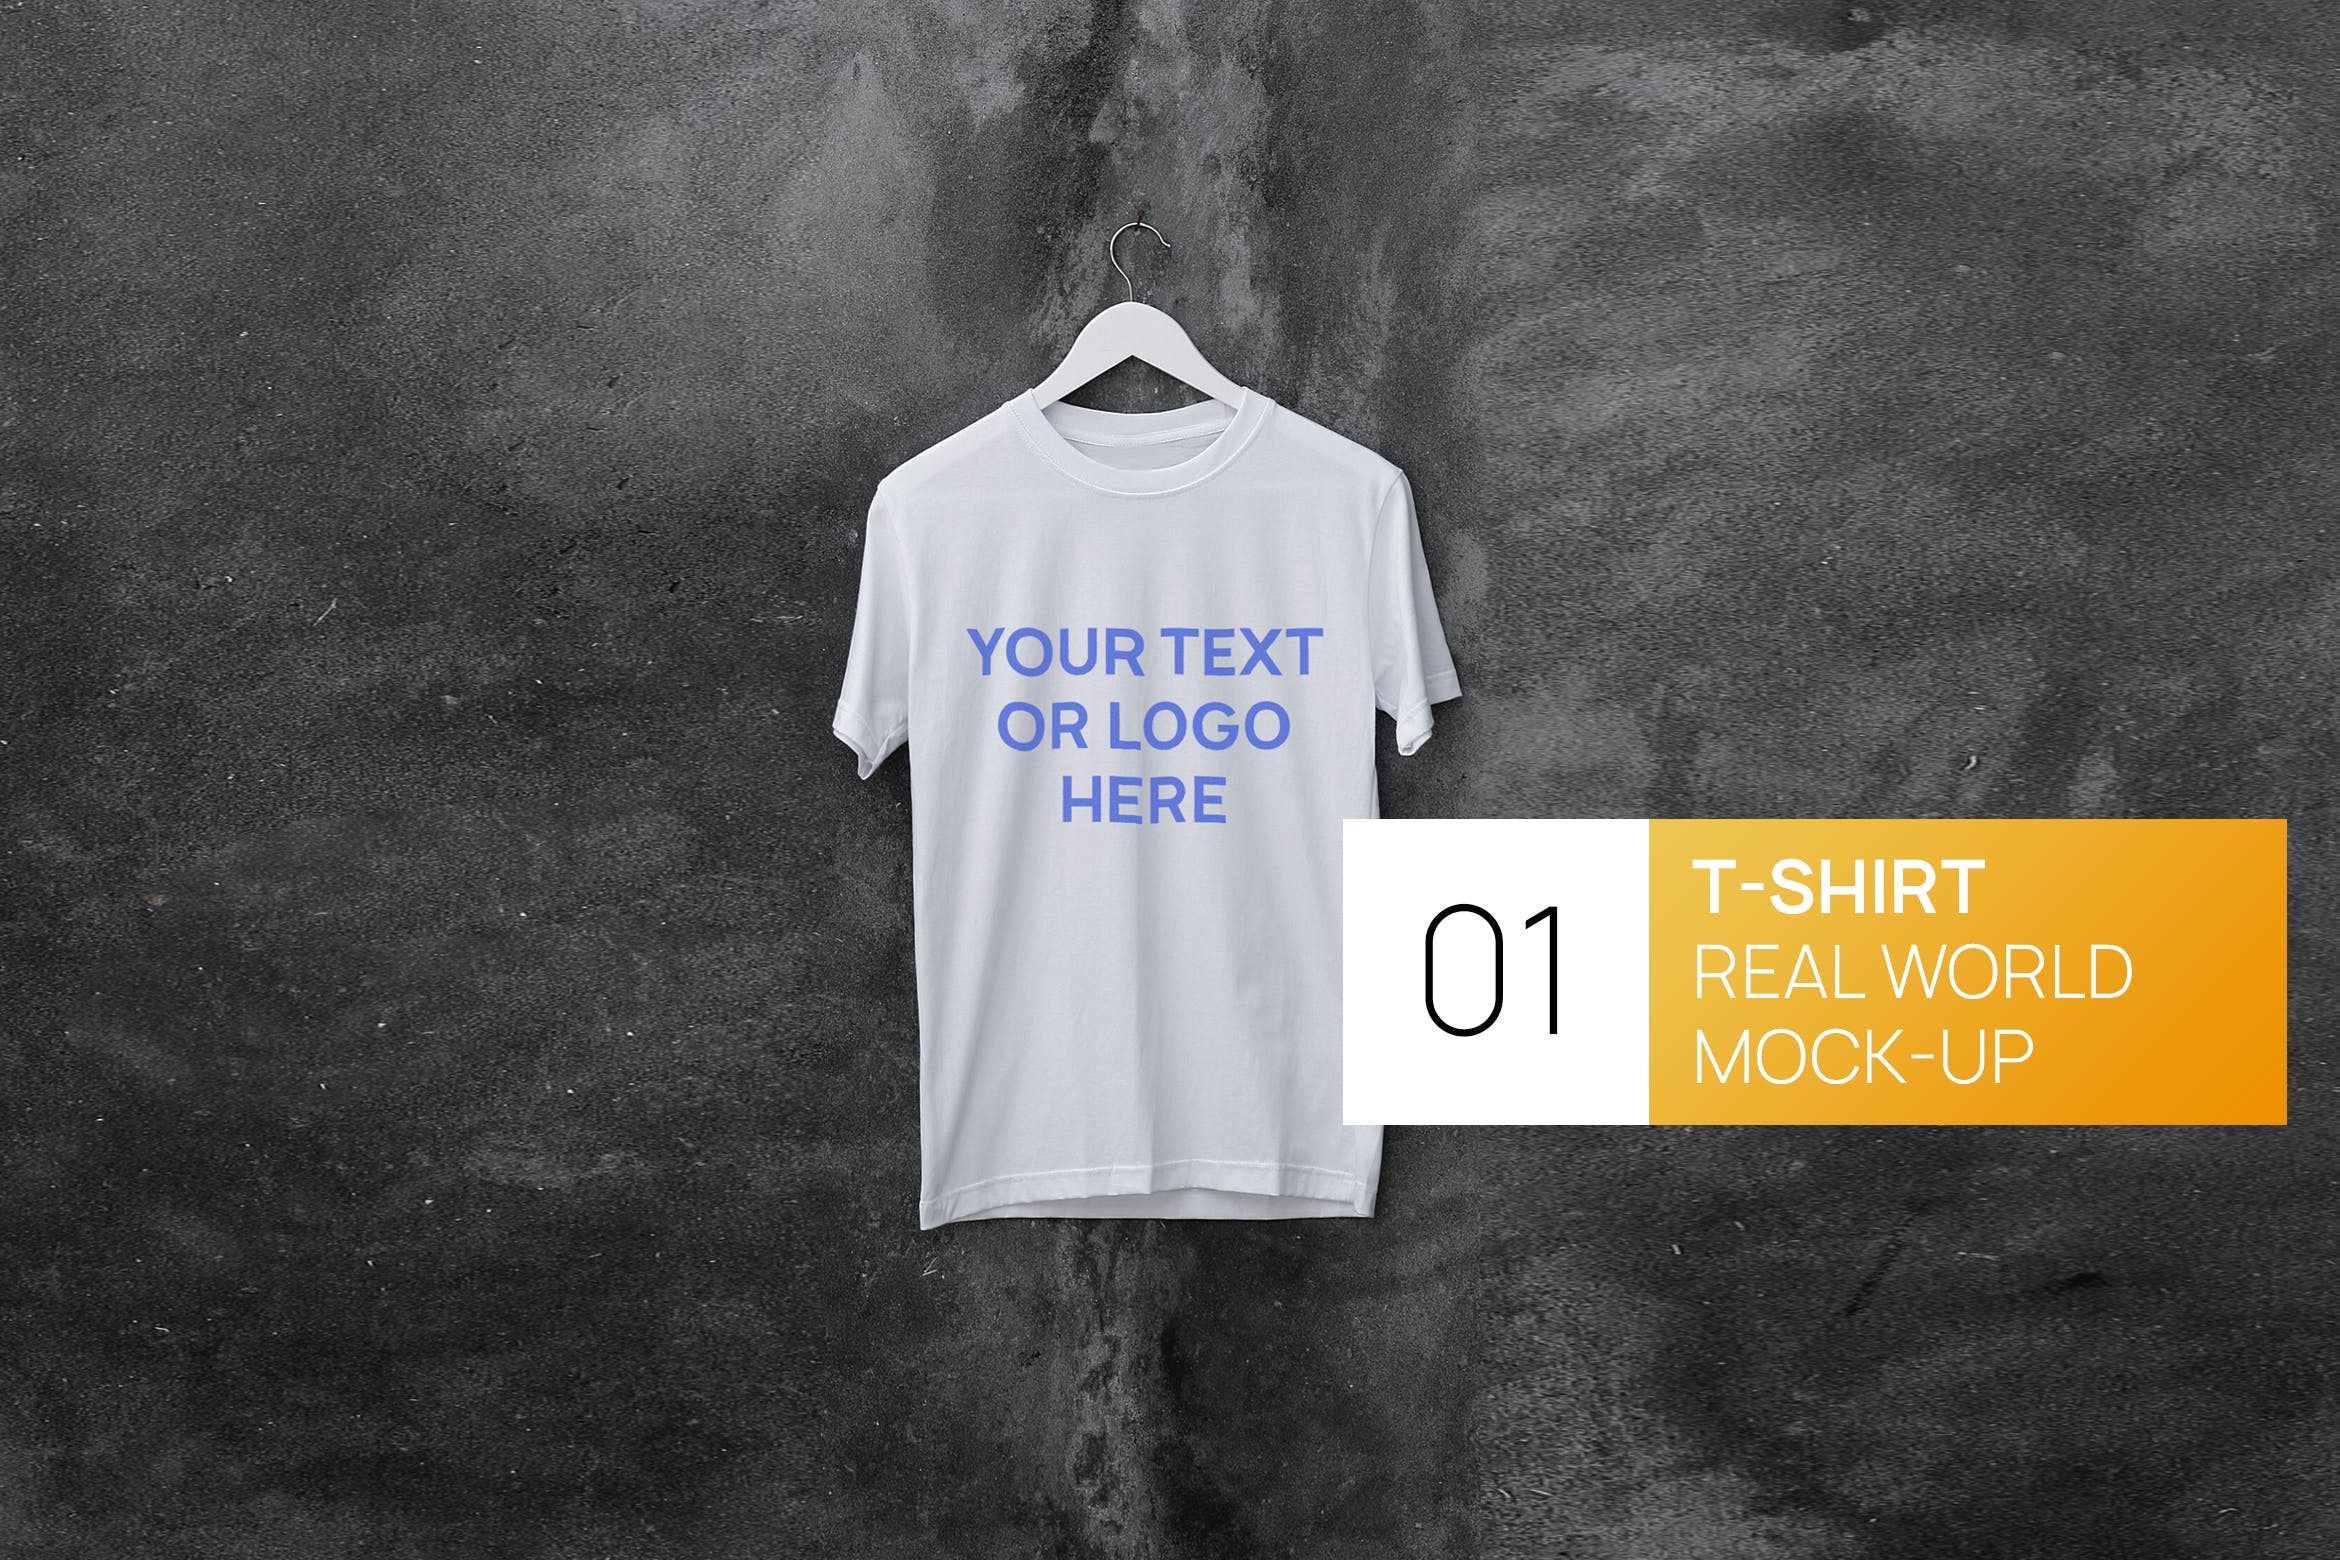 混凝土墙背景白色T恤印花设计效果图样机第一素材精选 Concrete Wall White T-Shirt Real World Mock-up插图